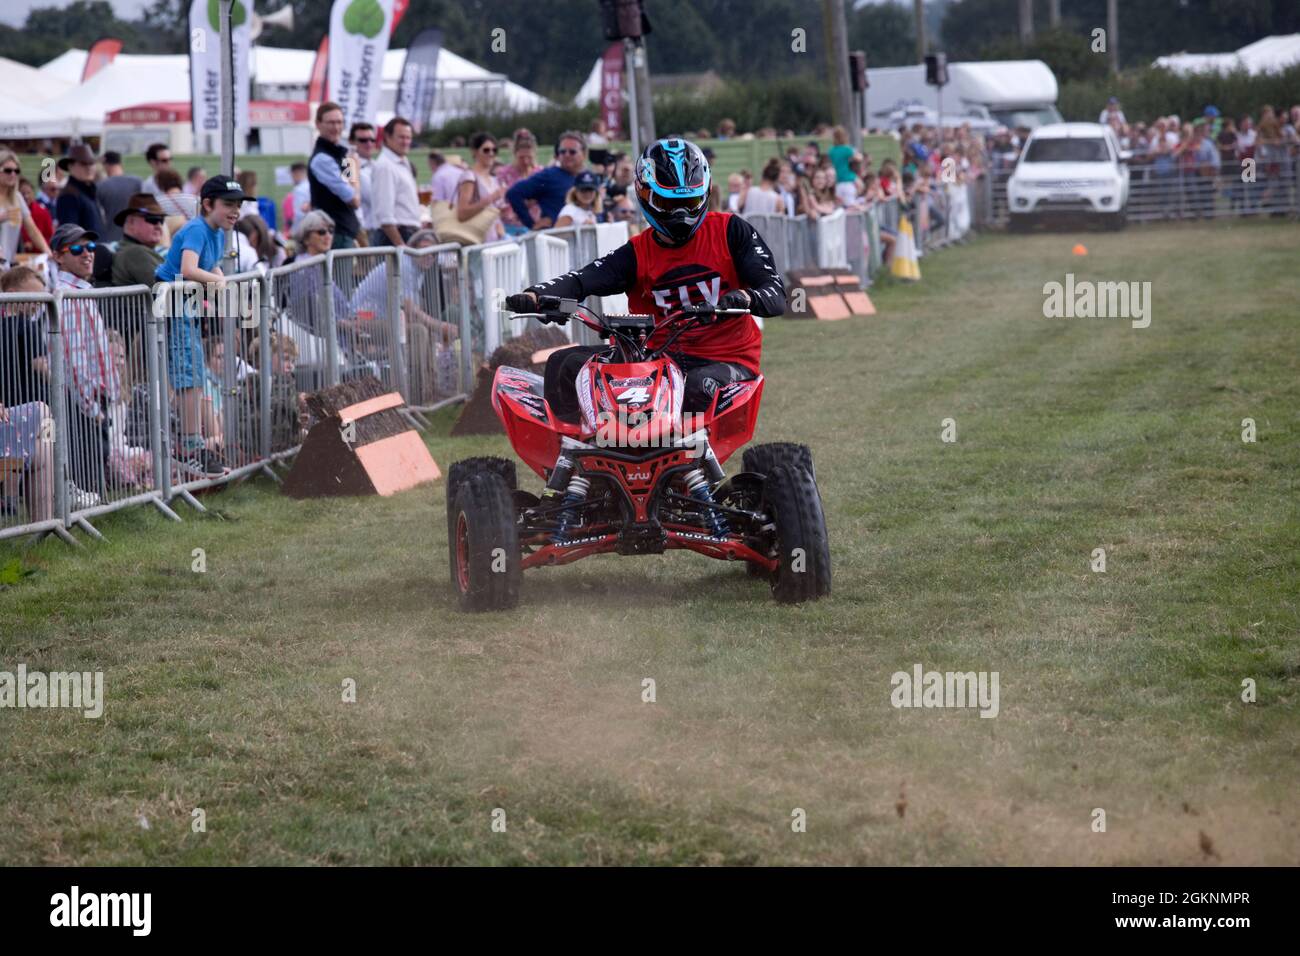 Paul Hannam Honda stunt bikes performing in main area at Moreton in Marsh Agricultural Show 2021 UK Stock Photo